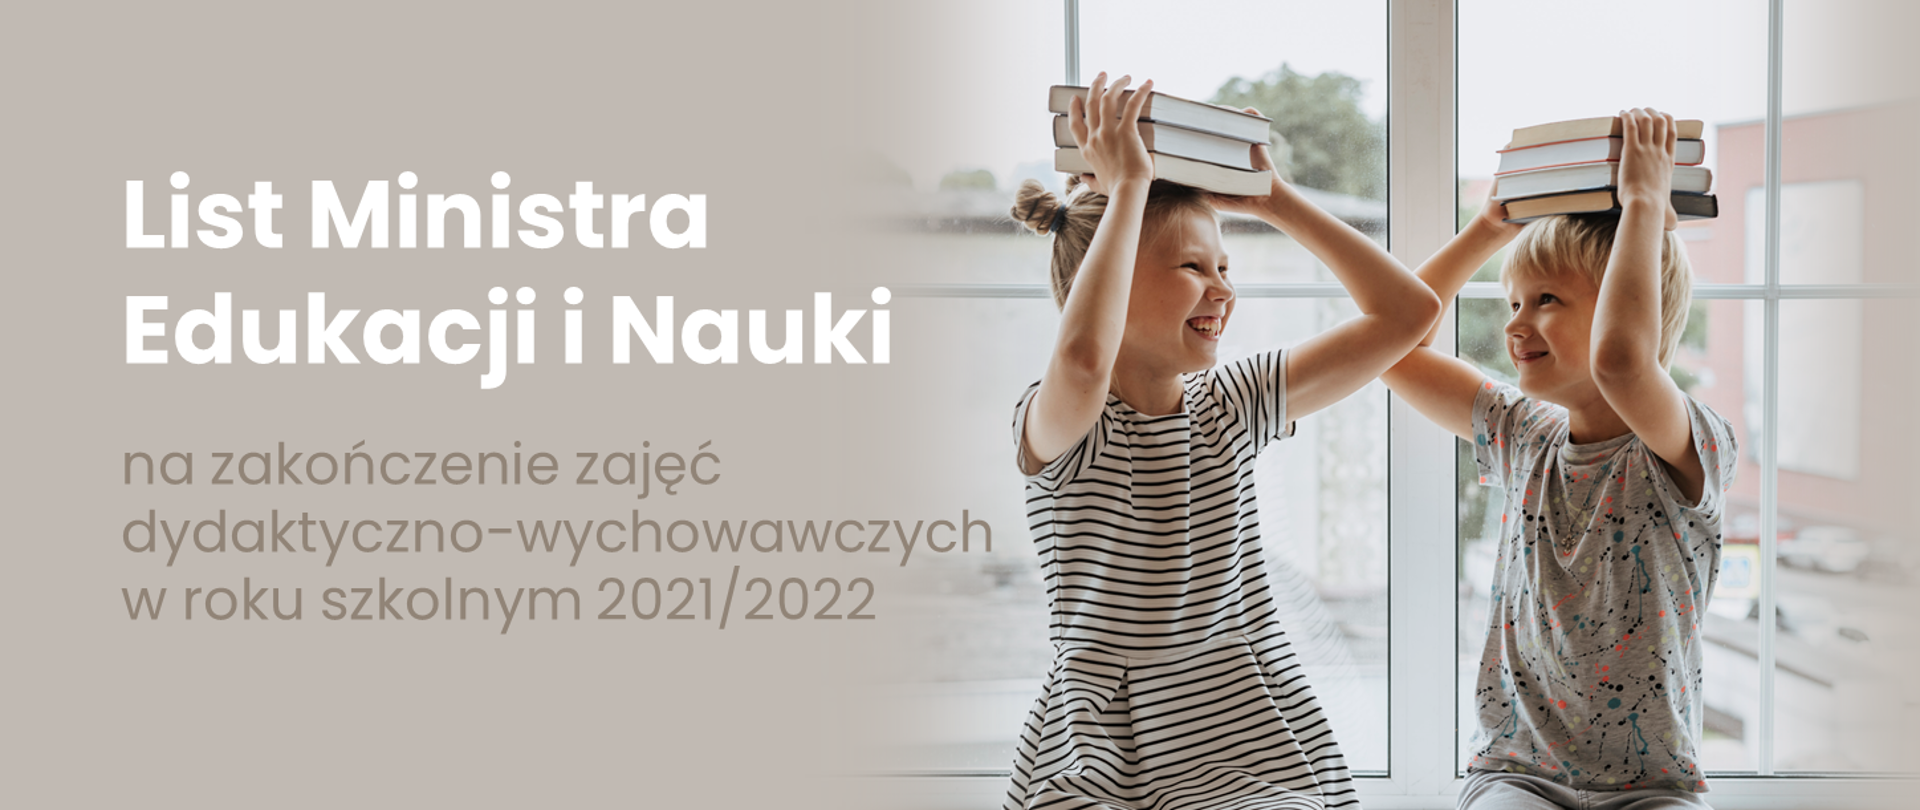 Grafika - dzieci trzymające na głowach książki i napis List ministra na zakończenie zajęć dydaktyczno-wychowawczych w roku szkolnym 2021/2022.